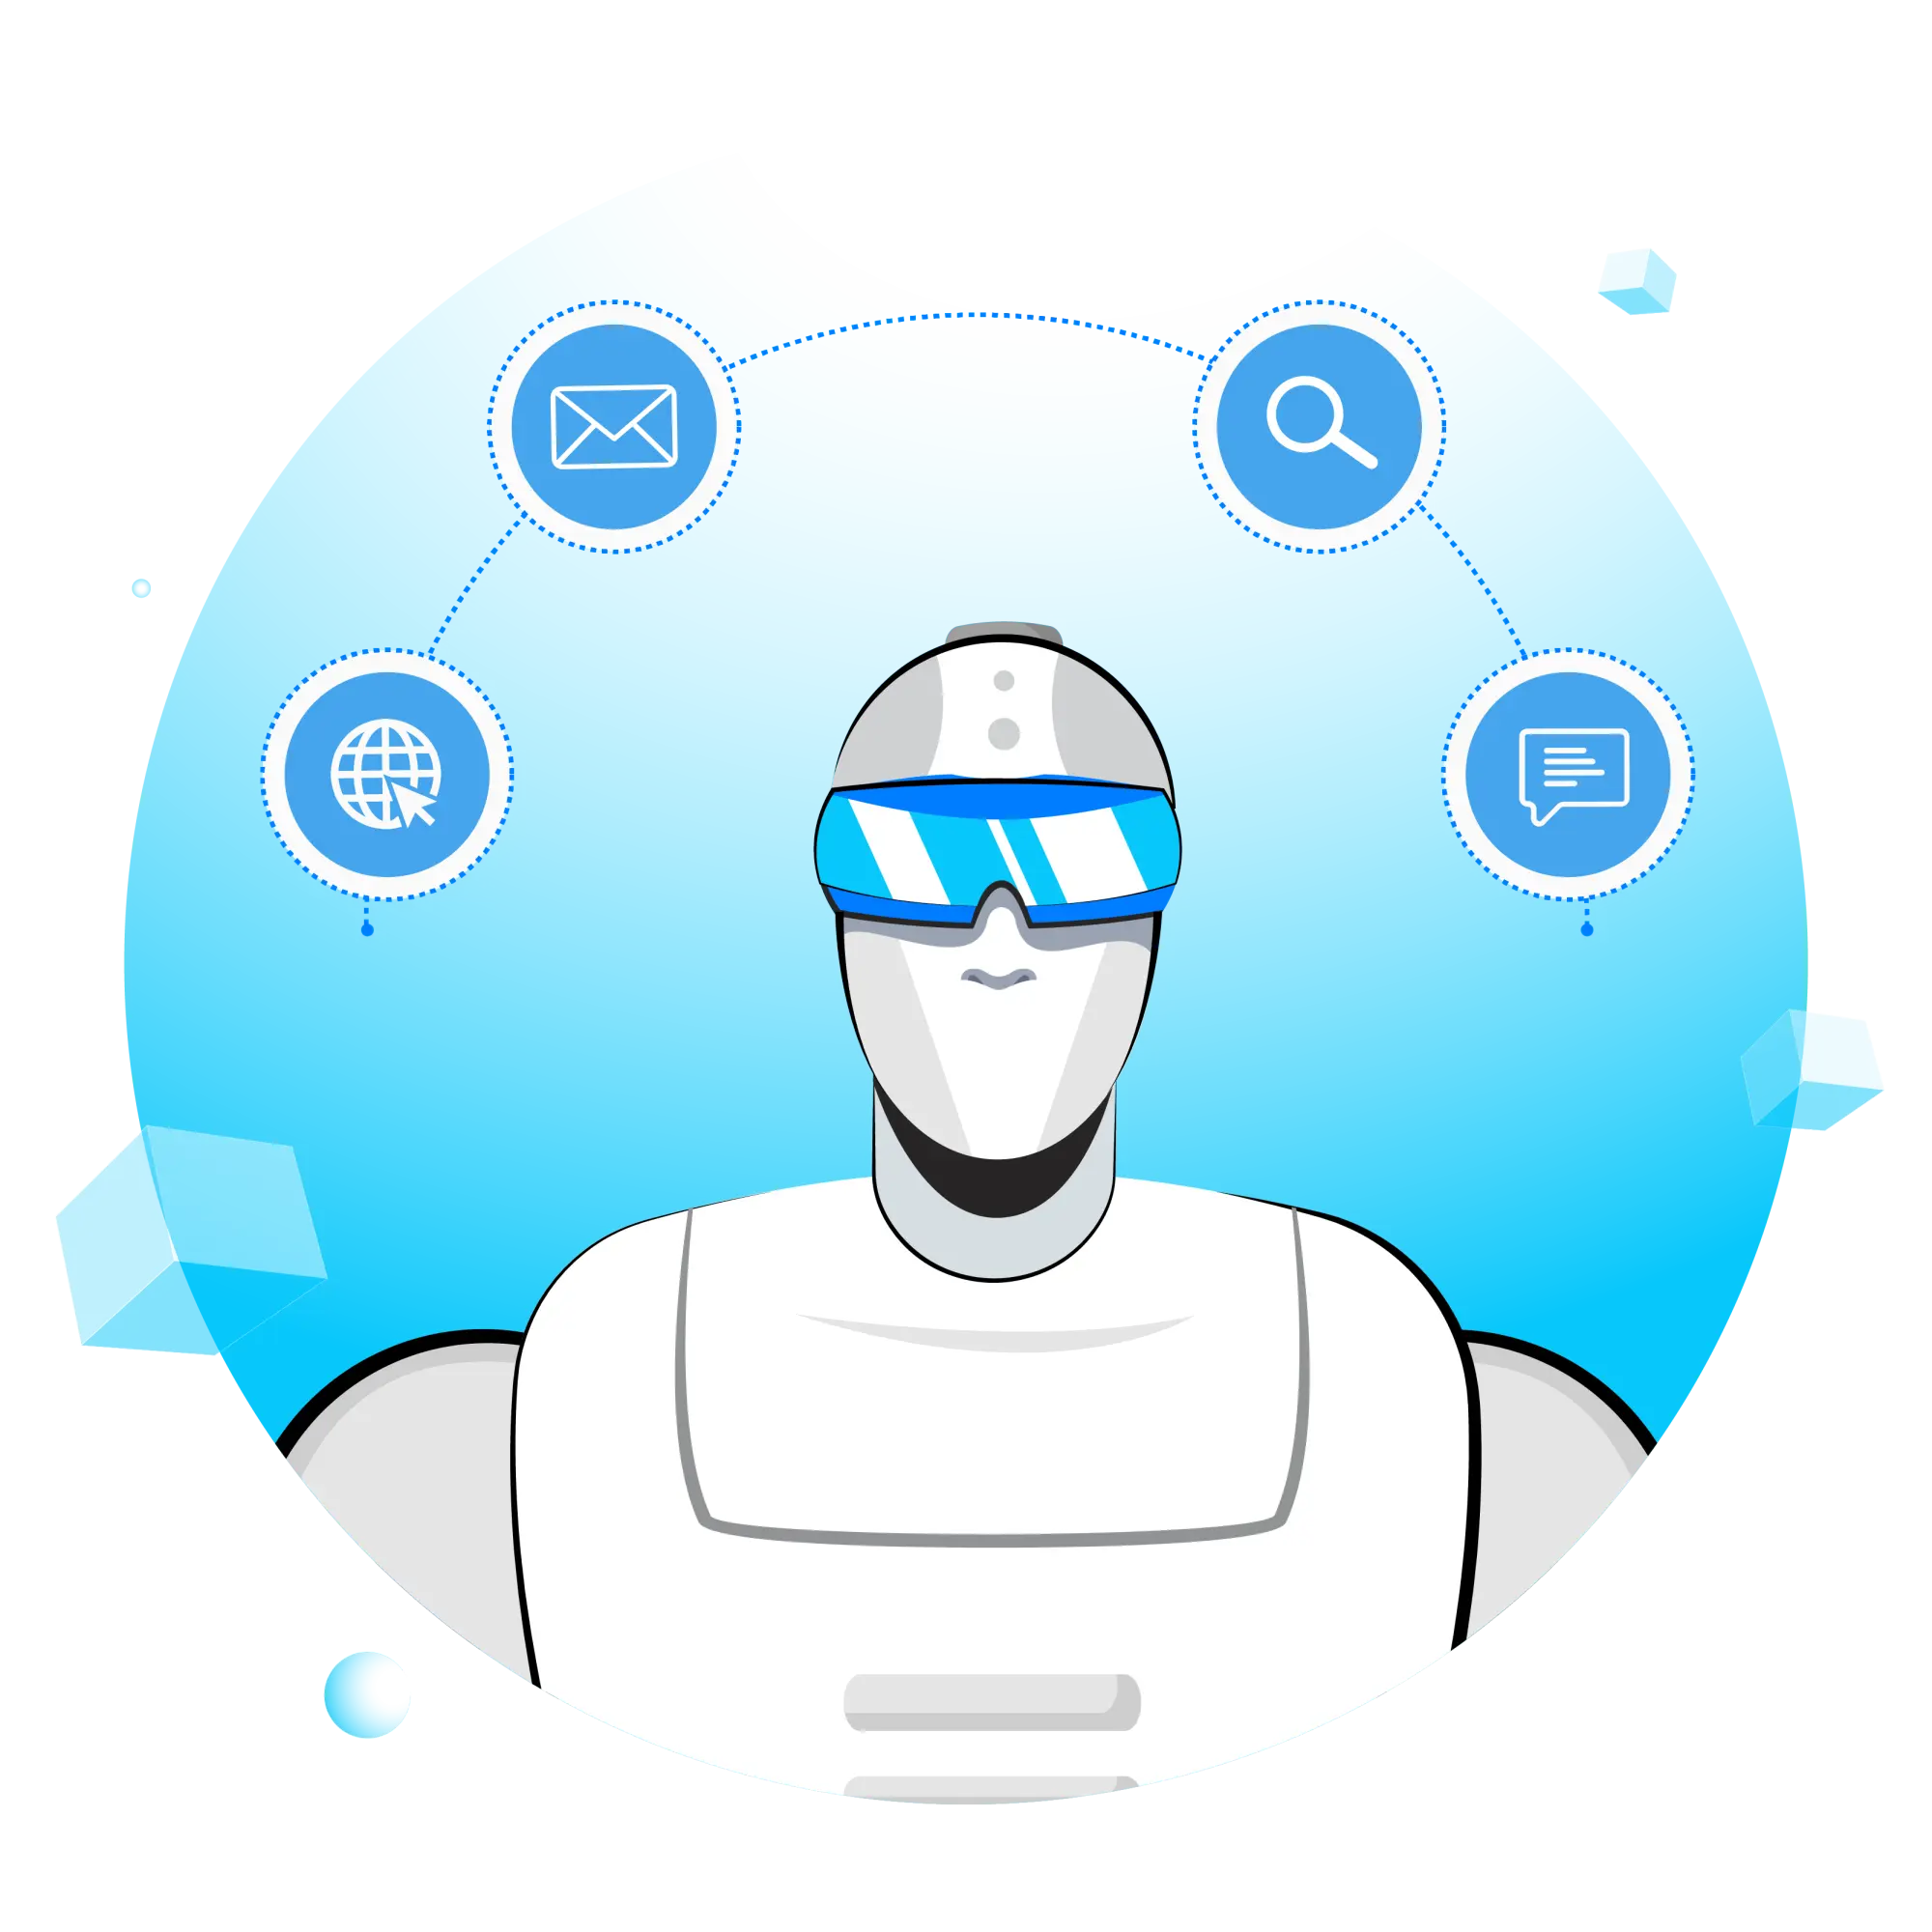 agente virtual es igual agente inteligente - Qué diferencias existen entre chatbots de IA y agentes virtuales